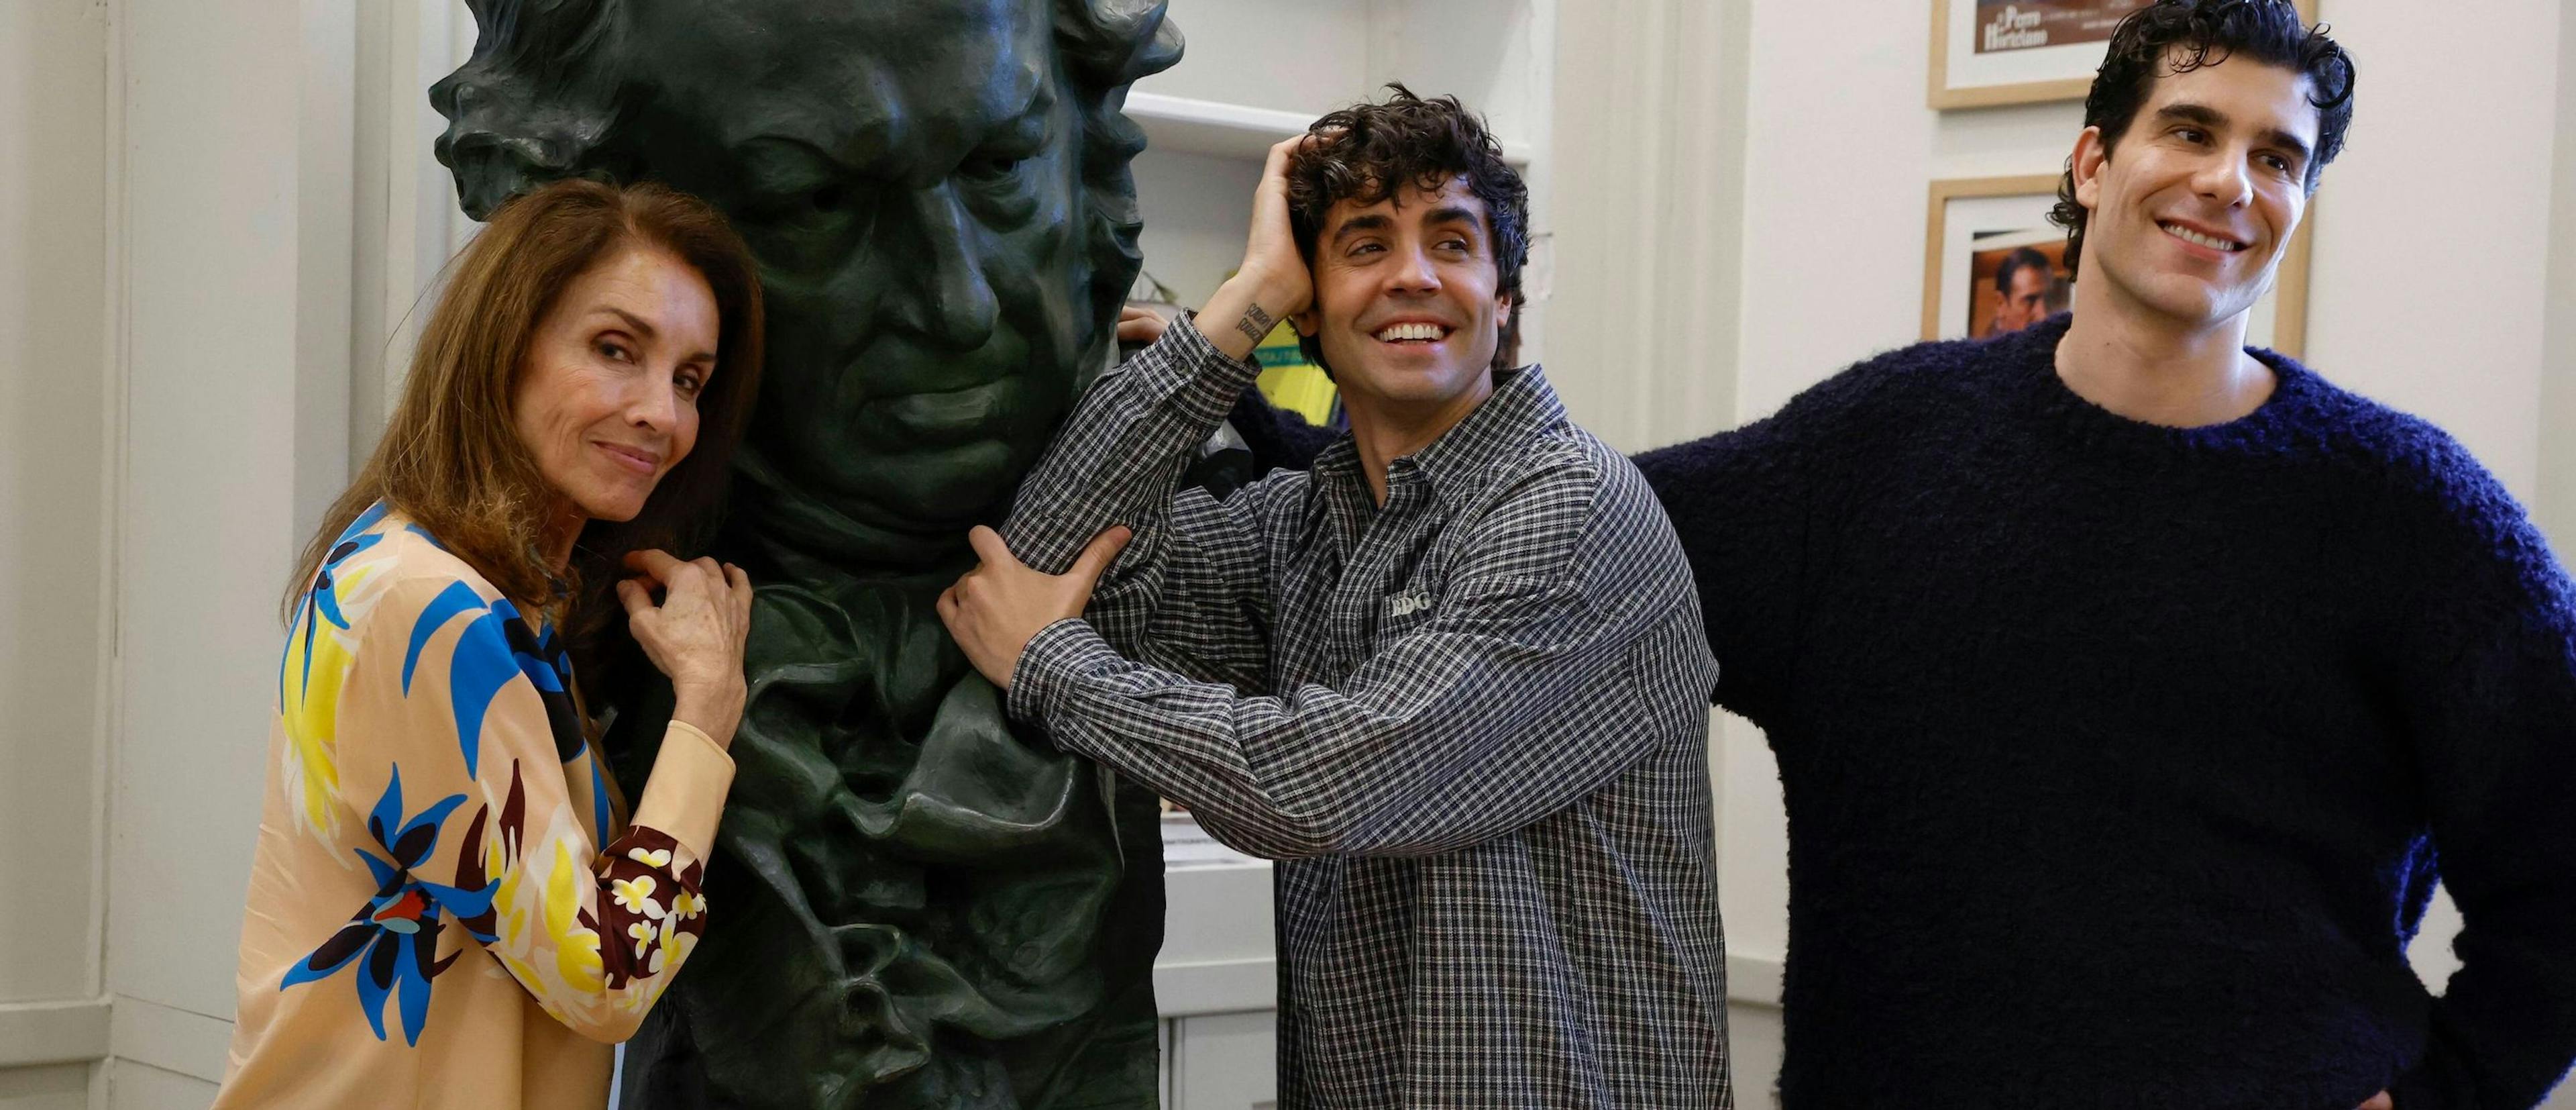 Ana Belén, Javier Ambrossi y Javier Calvo posan en la Academia de Cine junto a una réplica de la estatuilla del Goya